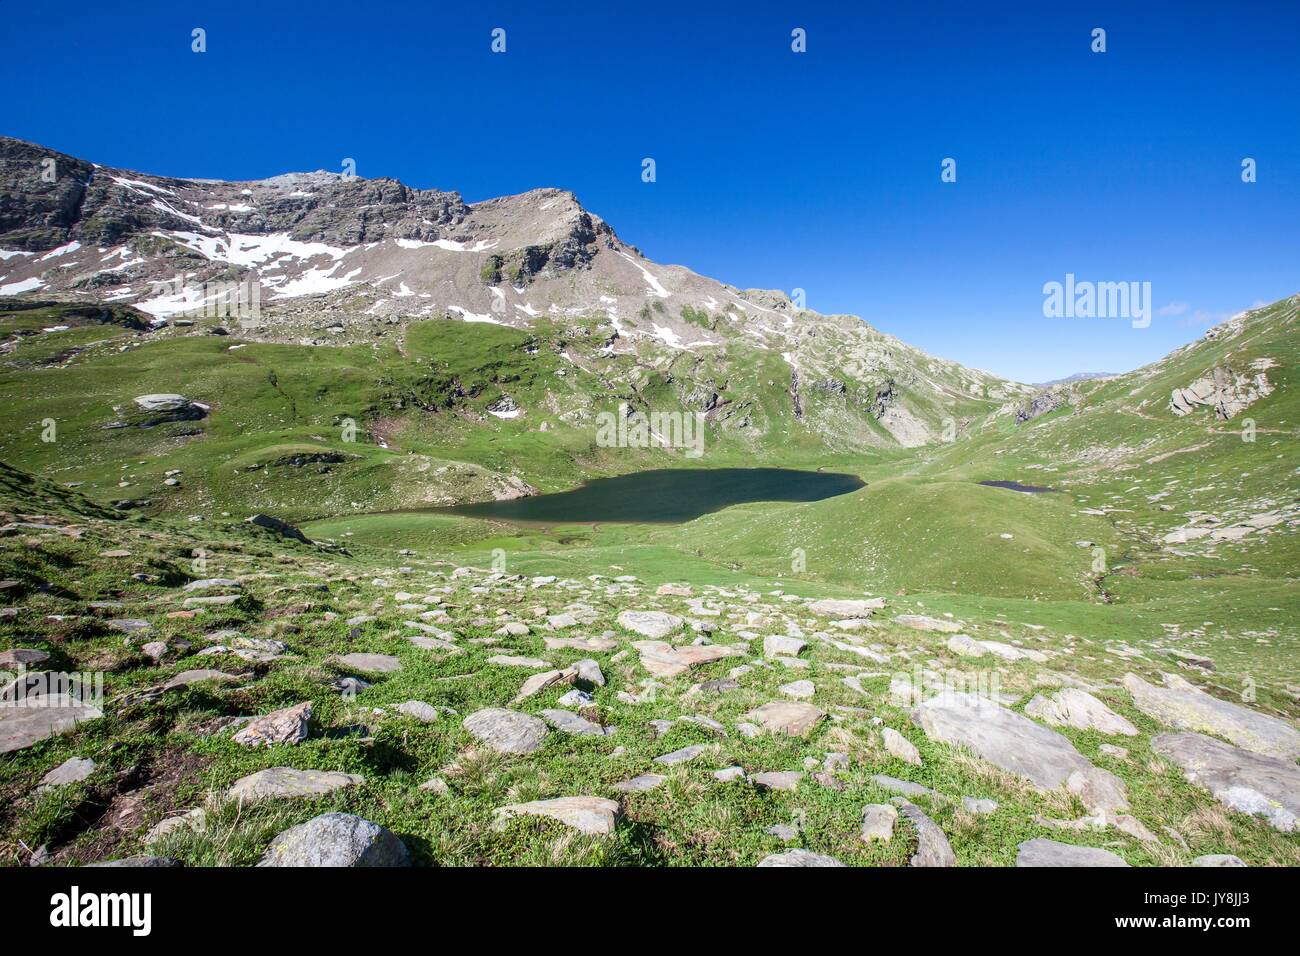 Panoramic view of Baldiscio pass. Campodolcino, Vallespluga, Valchiavenna, Lombardy, Italy Europe Stock Photo